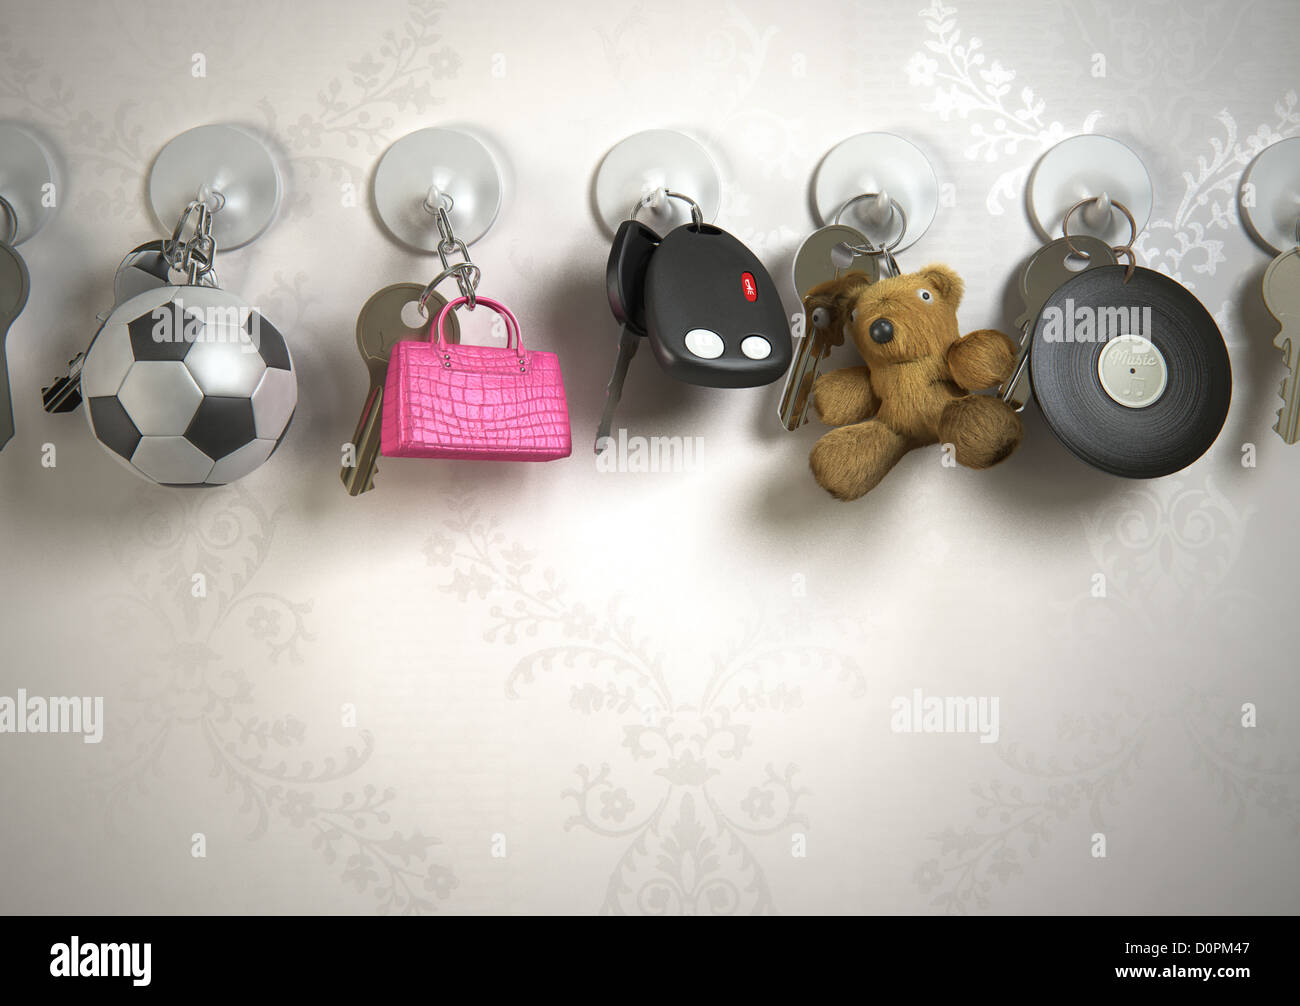 Schlüssel, Schlüsselanhänger, Wand, Fußball, Handtasche, Teddybär, Vinyl-Schallplatte, Stockfoto